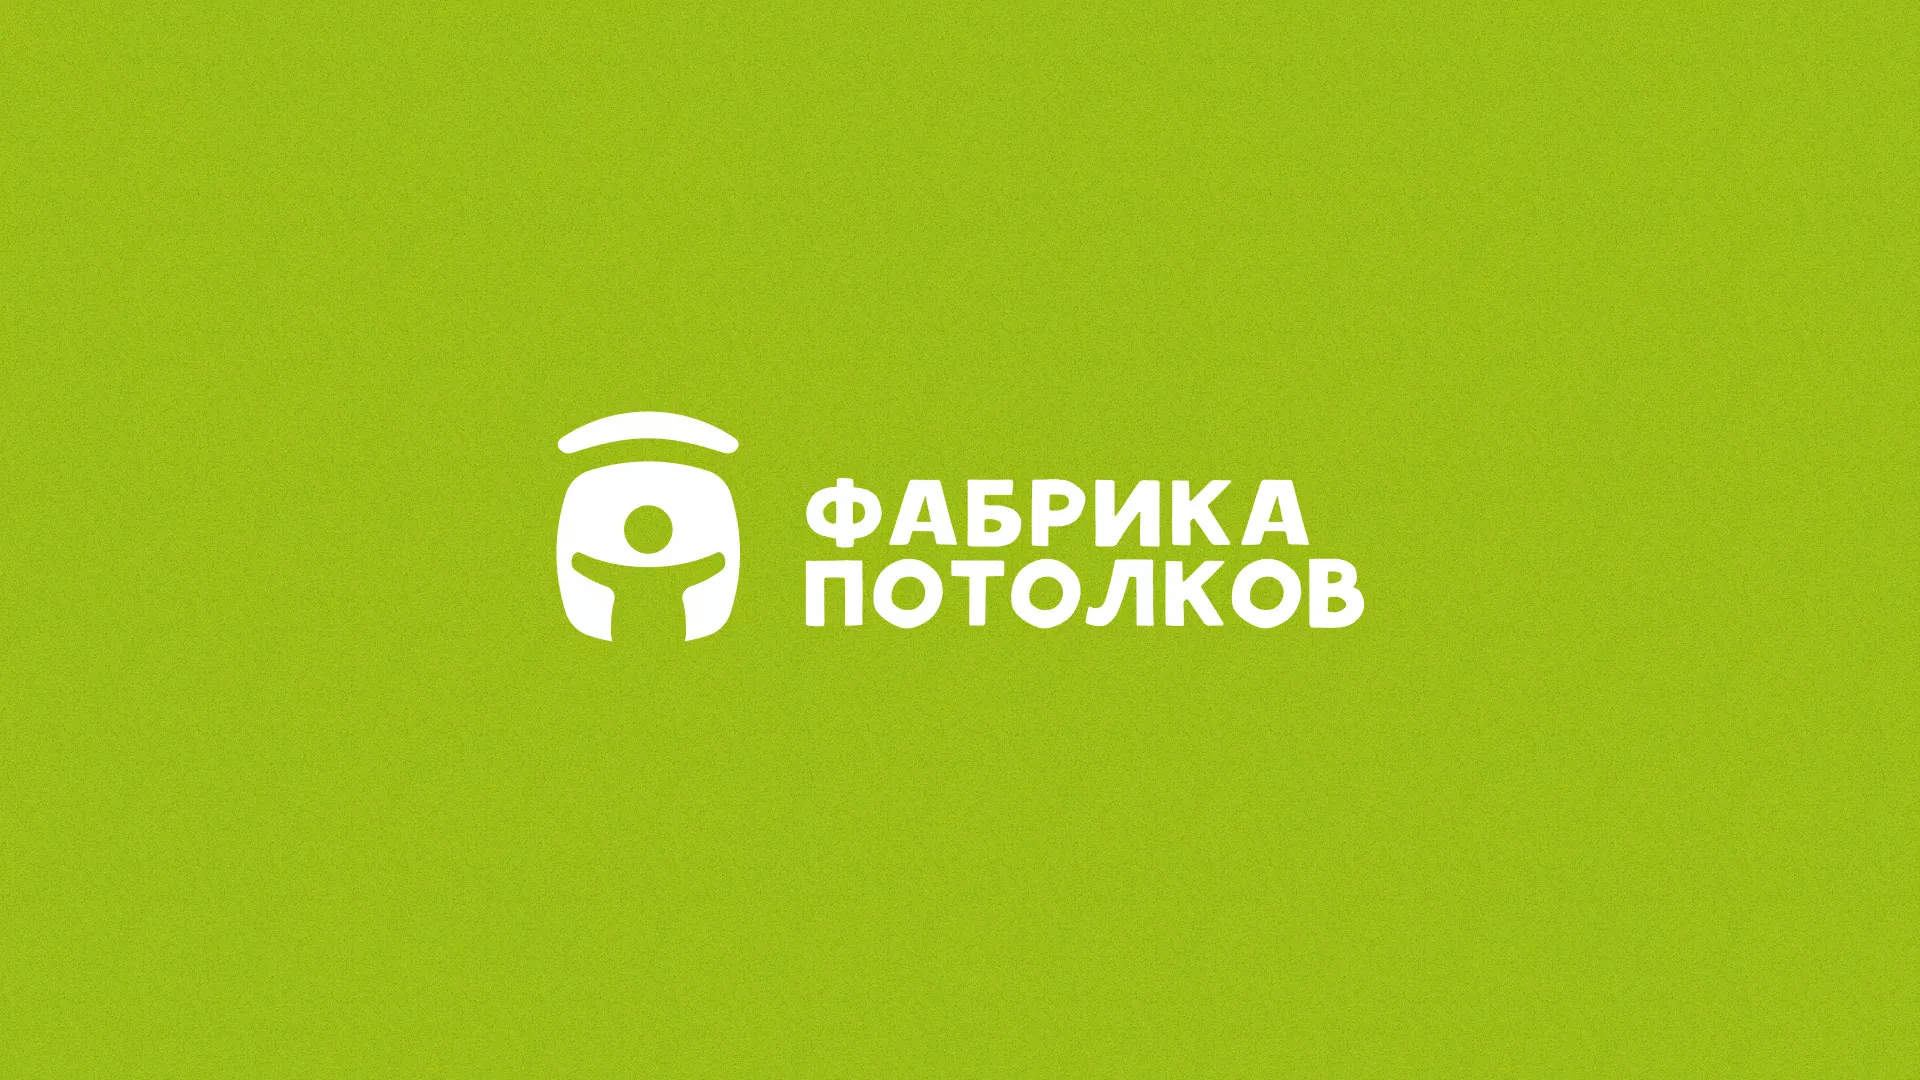 Разработка логотипа для производства натяжных потолков в Красноярске